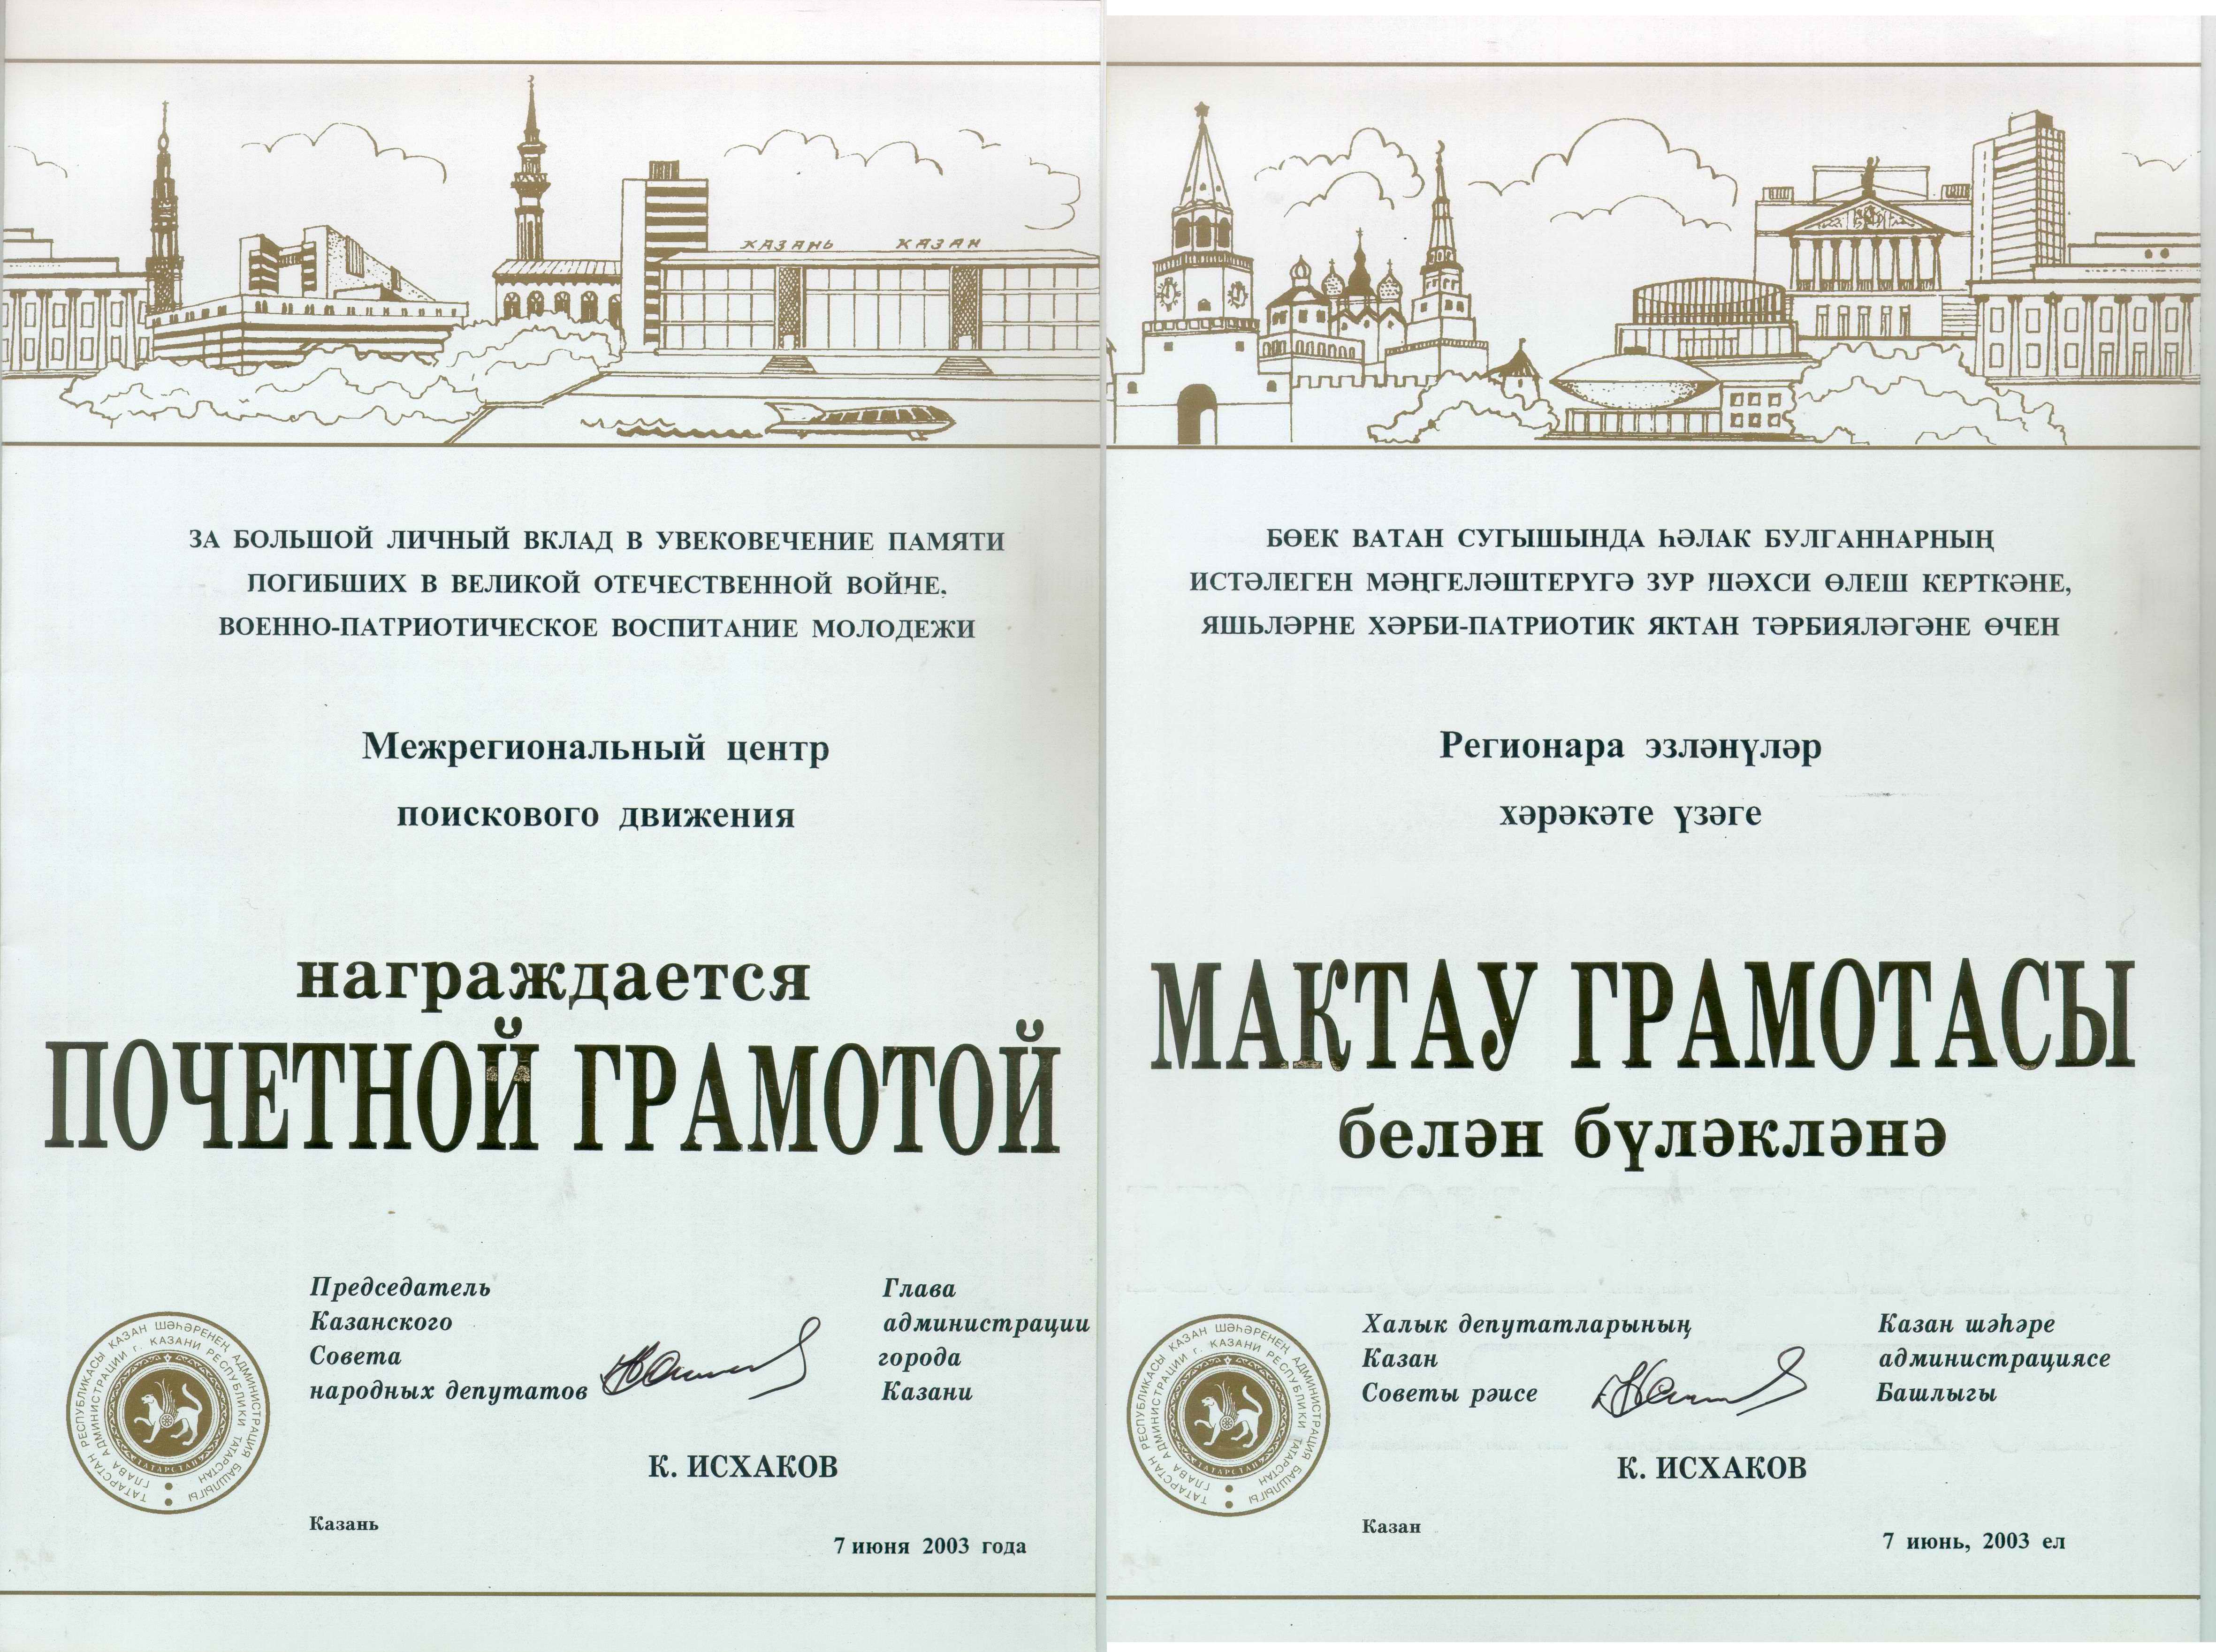 В 2003 году ИПЦ РОМО «Объединение «Отечество» РТ награждена Почетной грамотой города Казани.